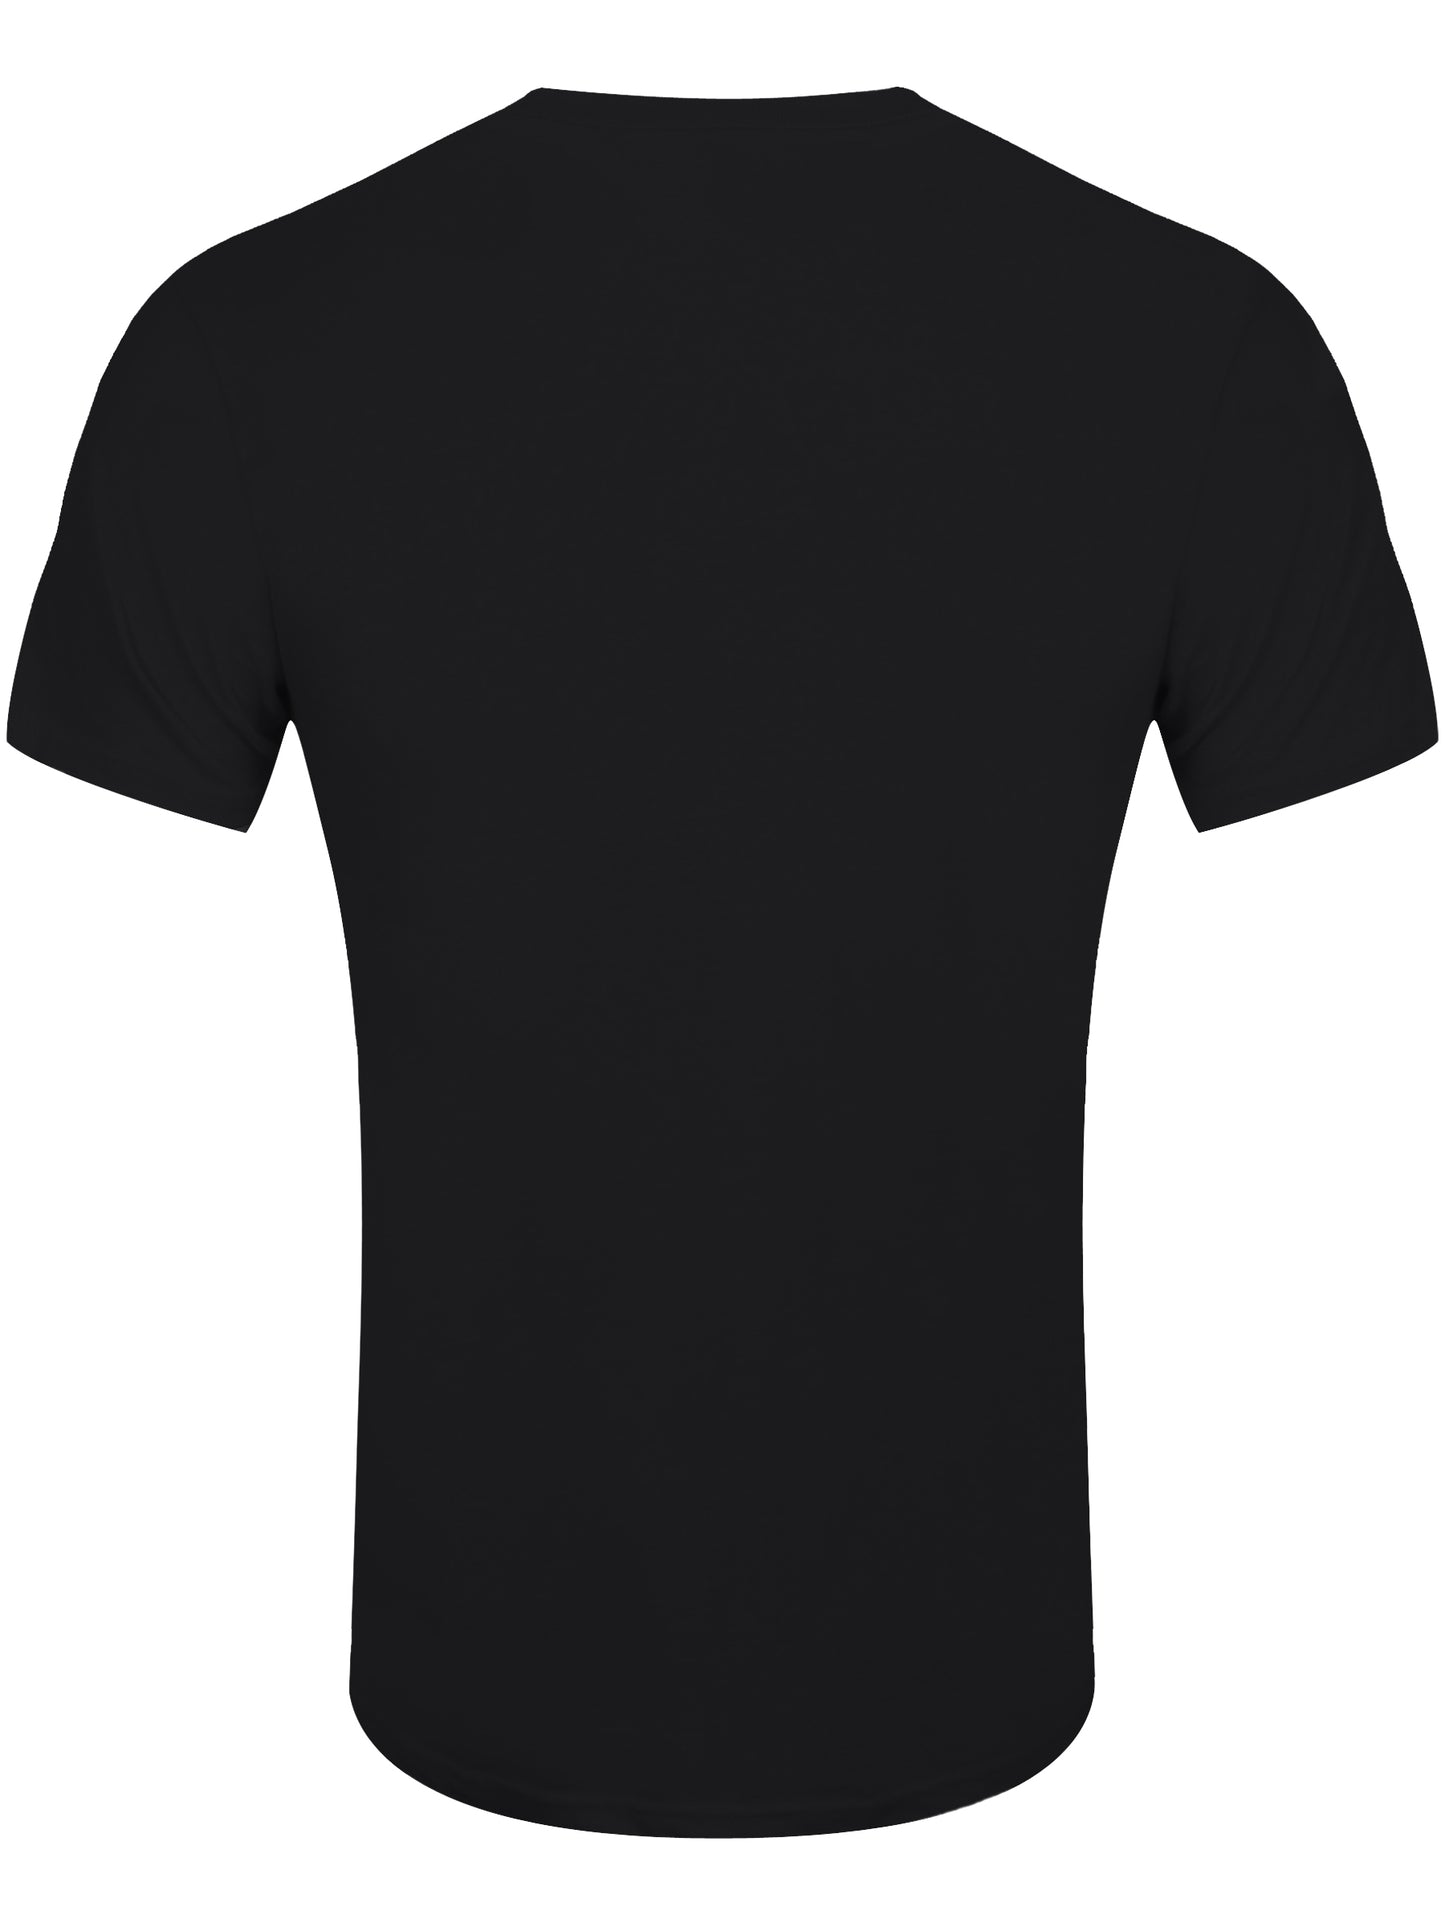 Led Zeppelin Hermit Men's Black T-Shirt